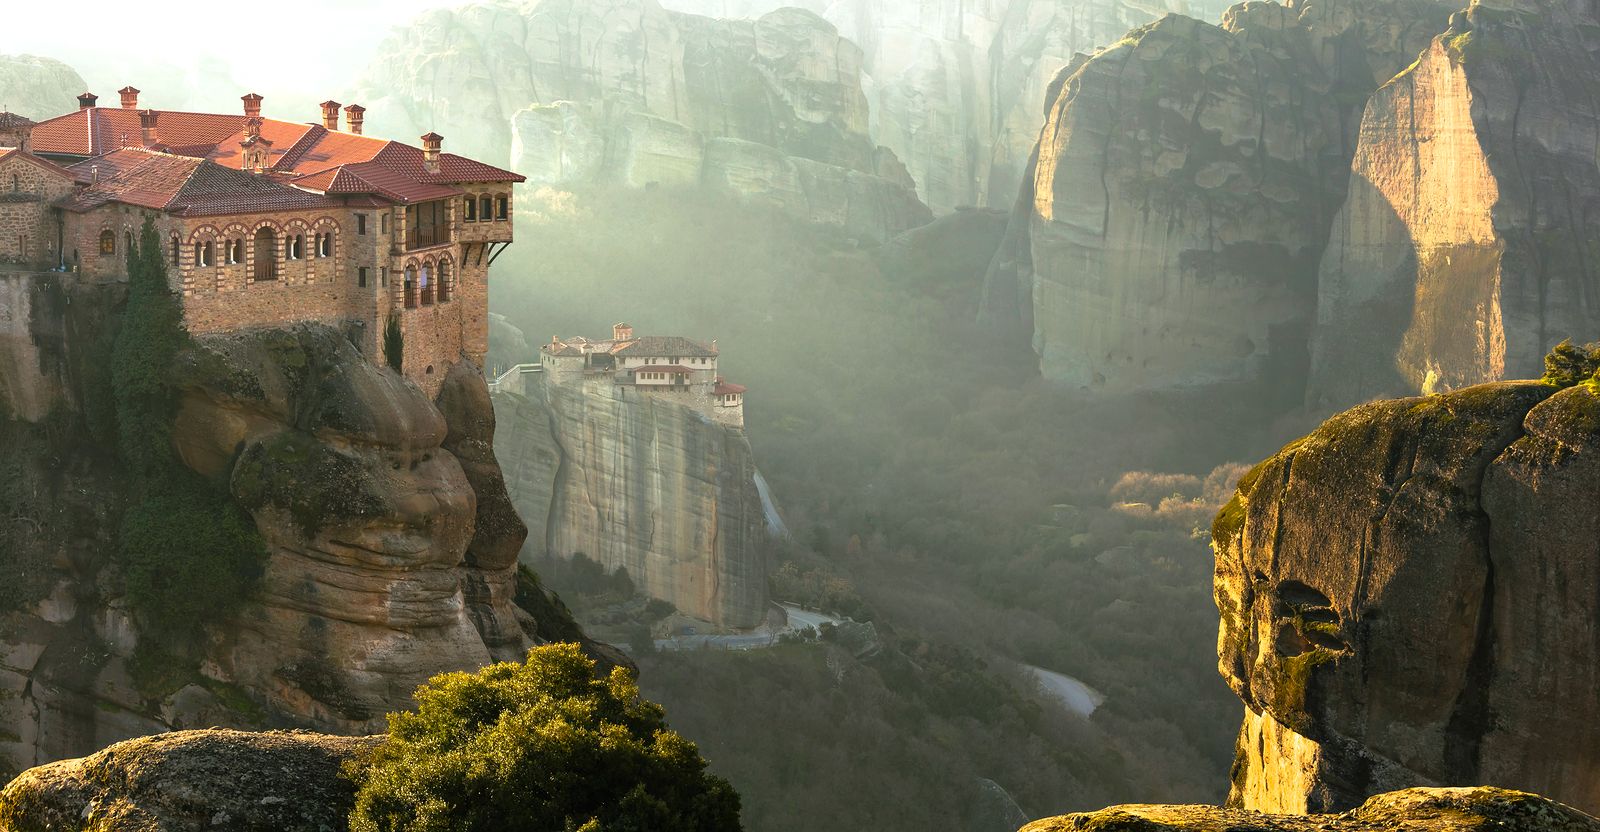 Lugares que visitar en Grecia aparte de Atenas; Meteora